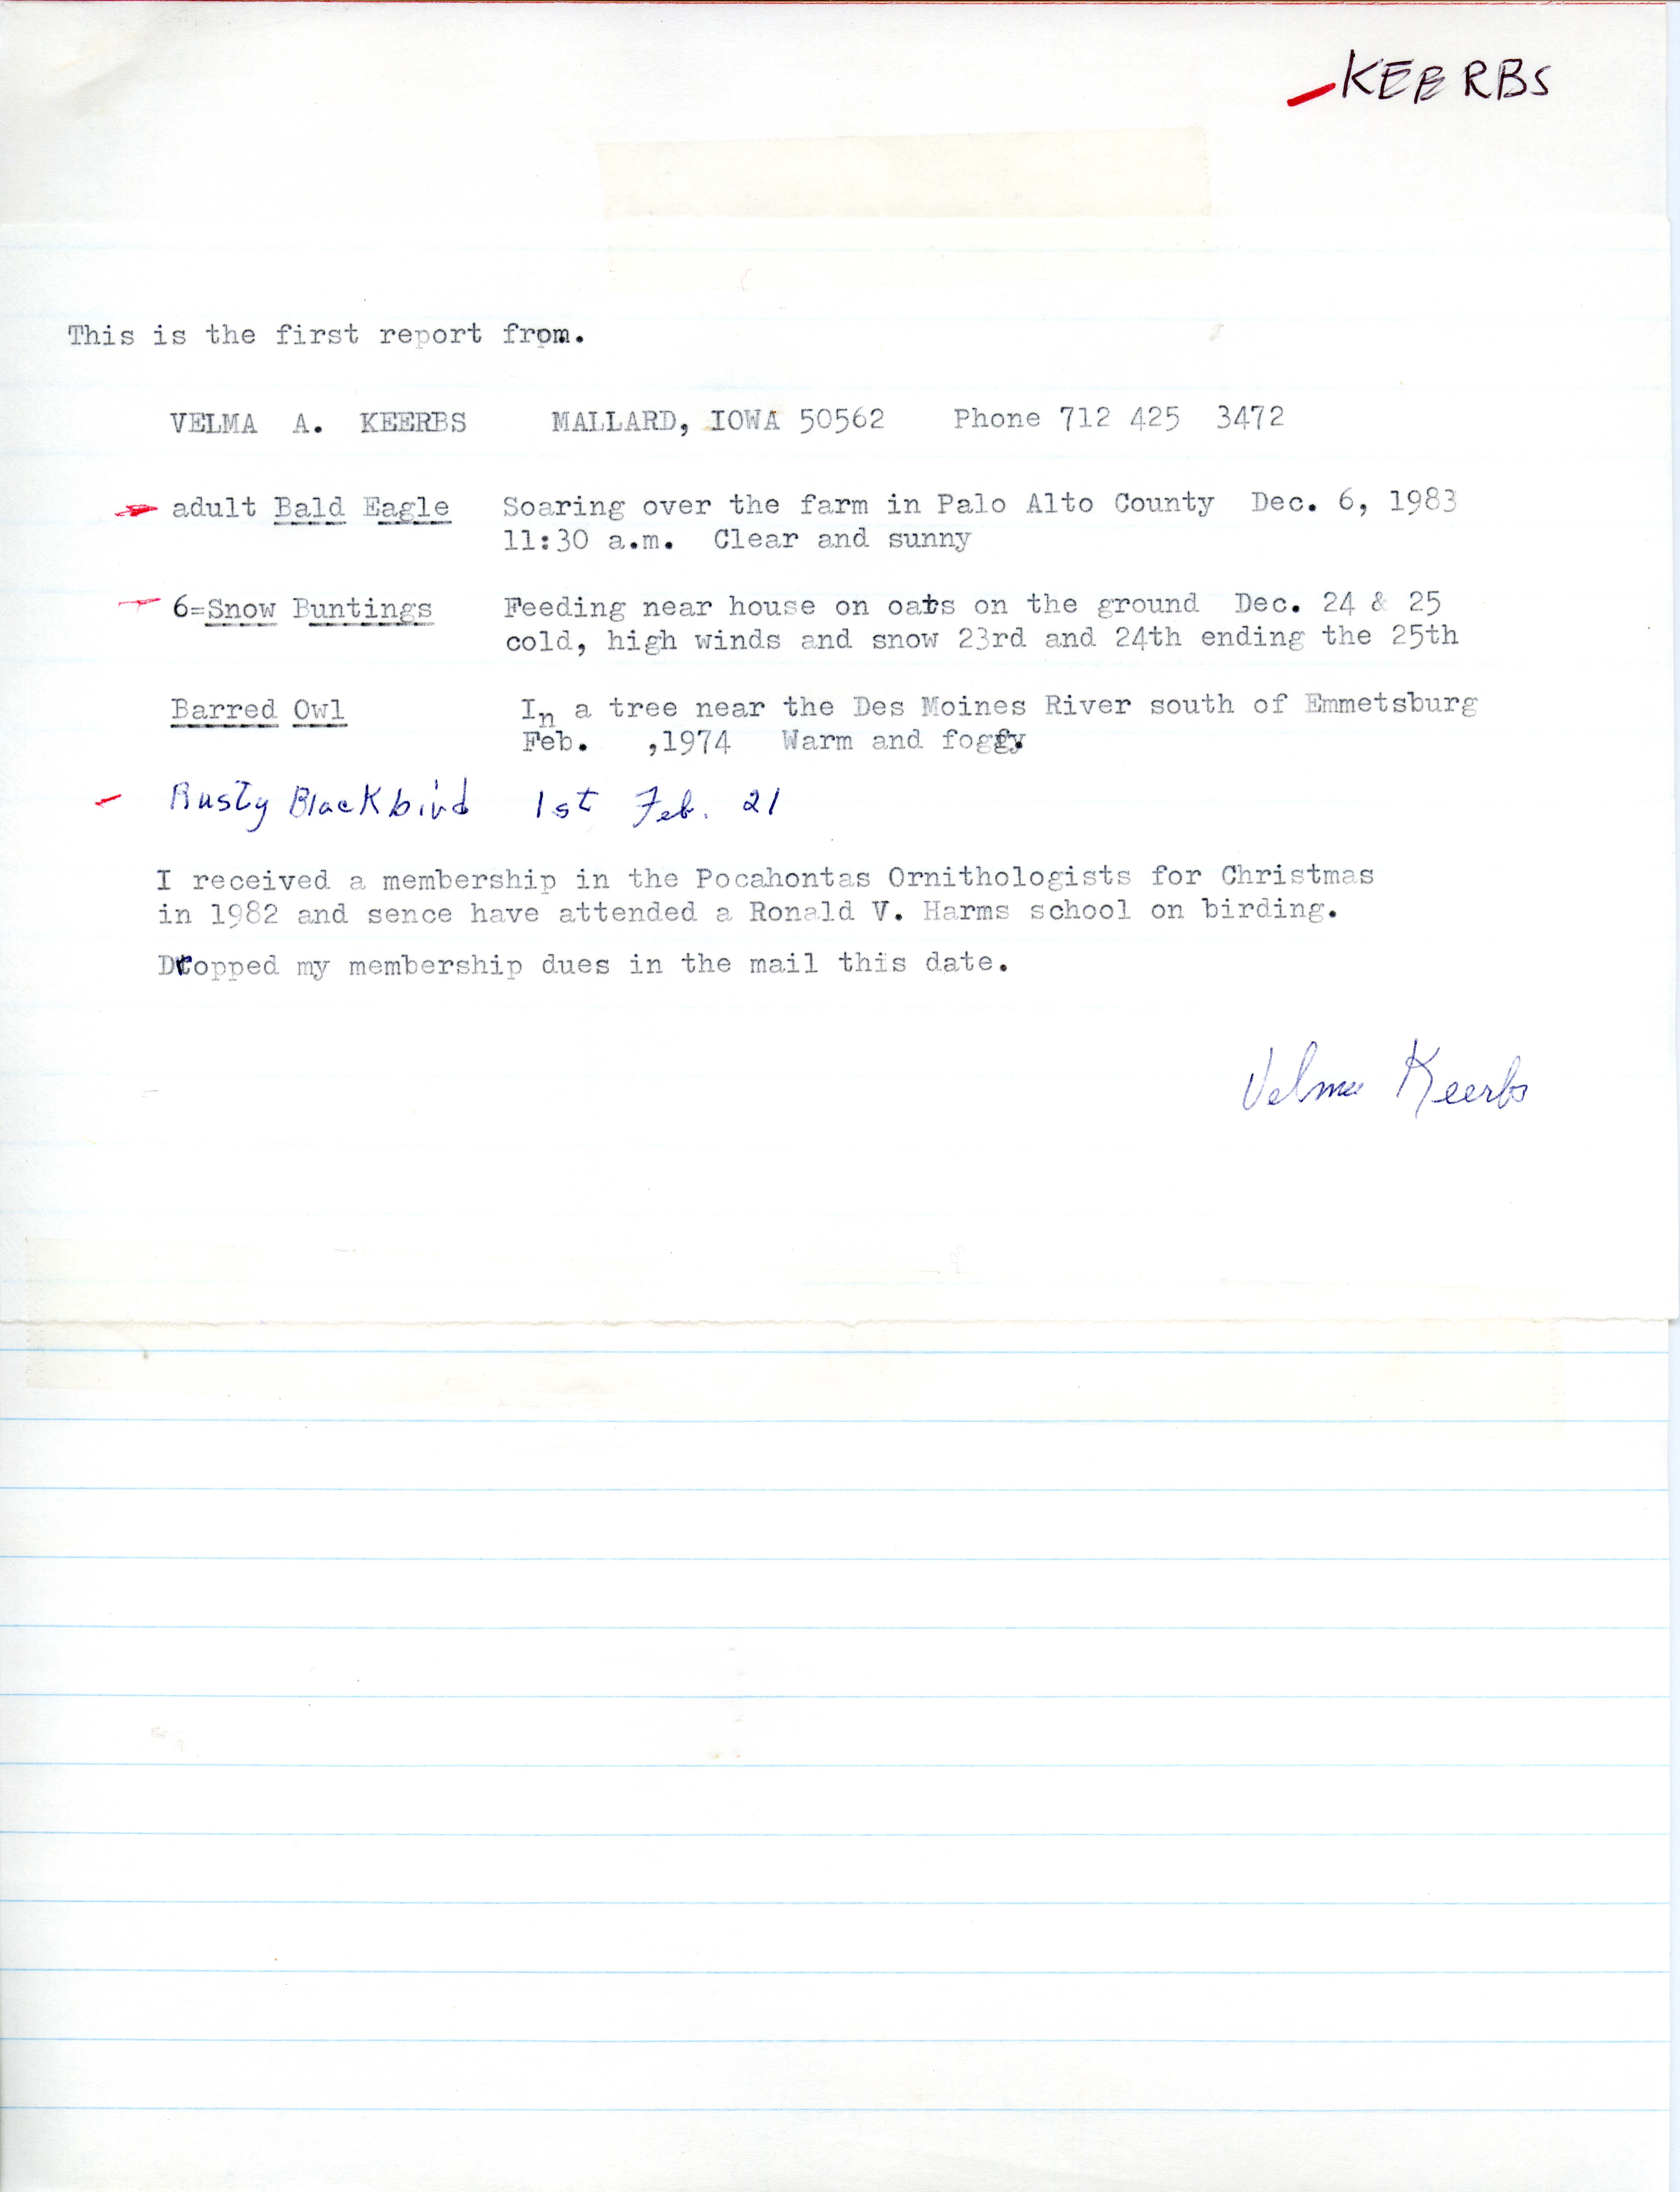 Field notes contributed by Velma A. Keerbs, Mallard, Iowa, winter 1983-1984